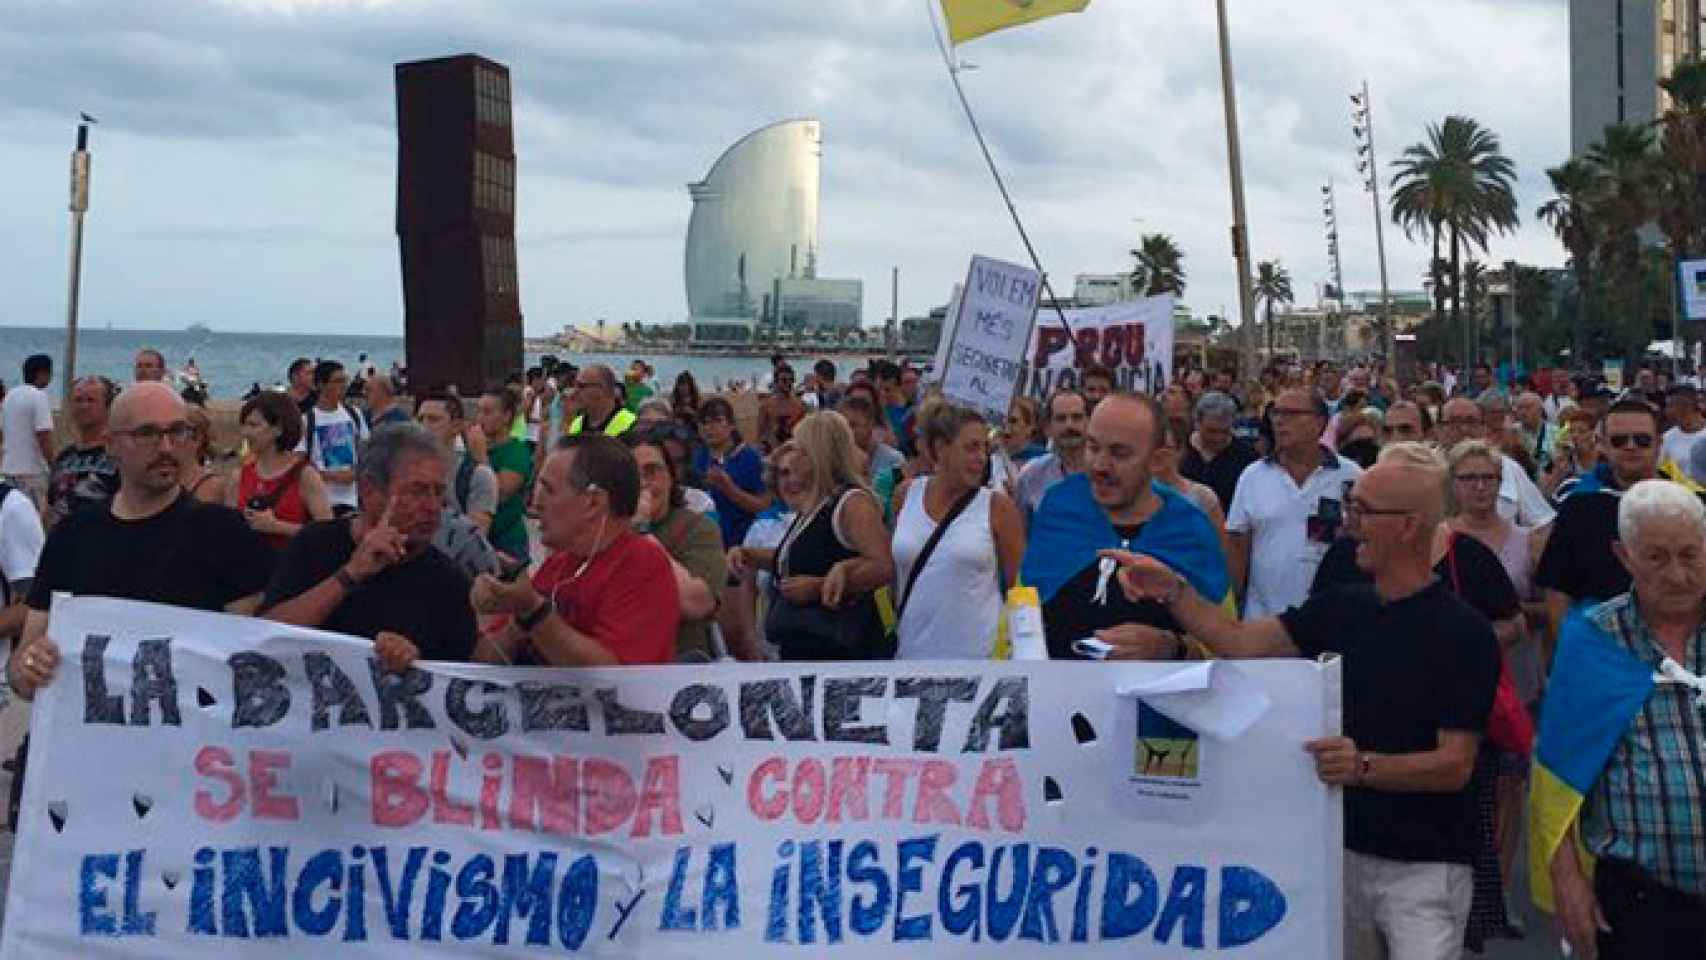 Manifestación de vecinos de La Barceloneta / CG